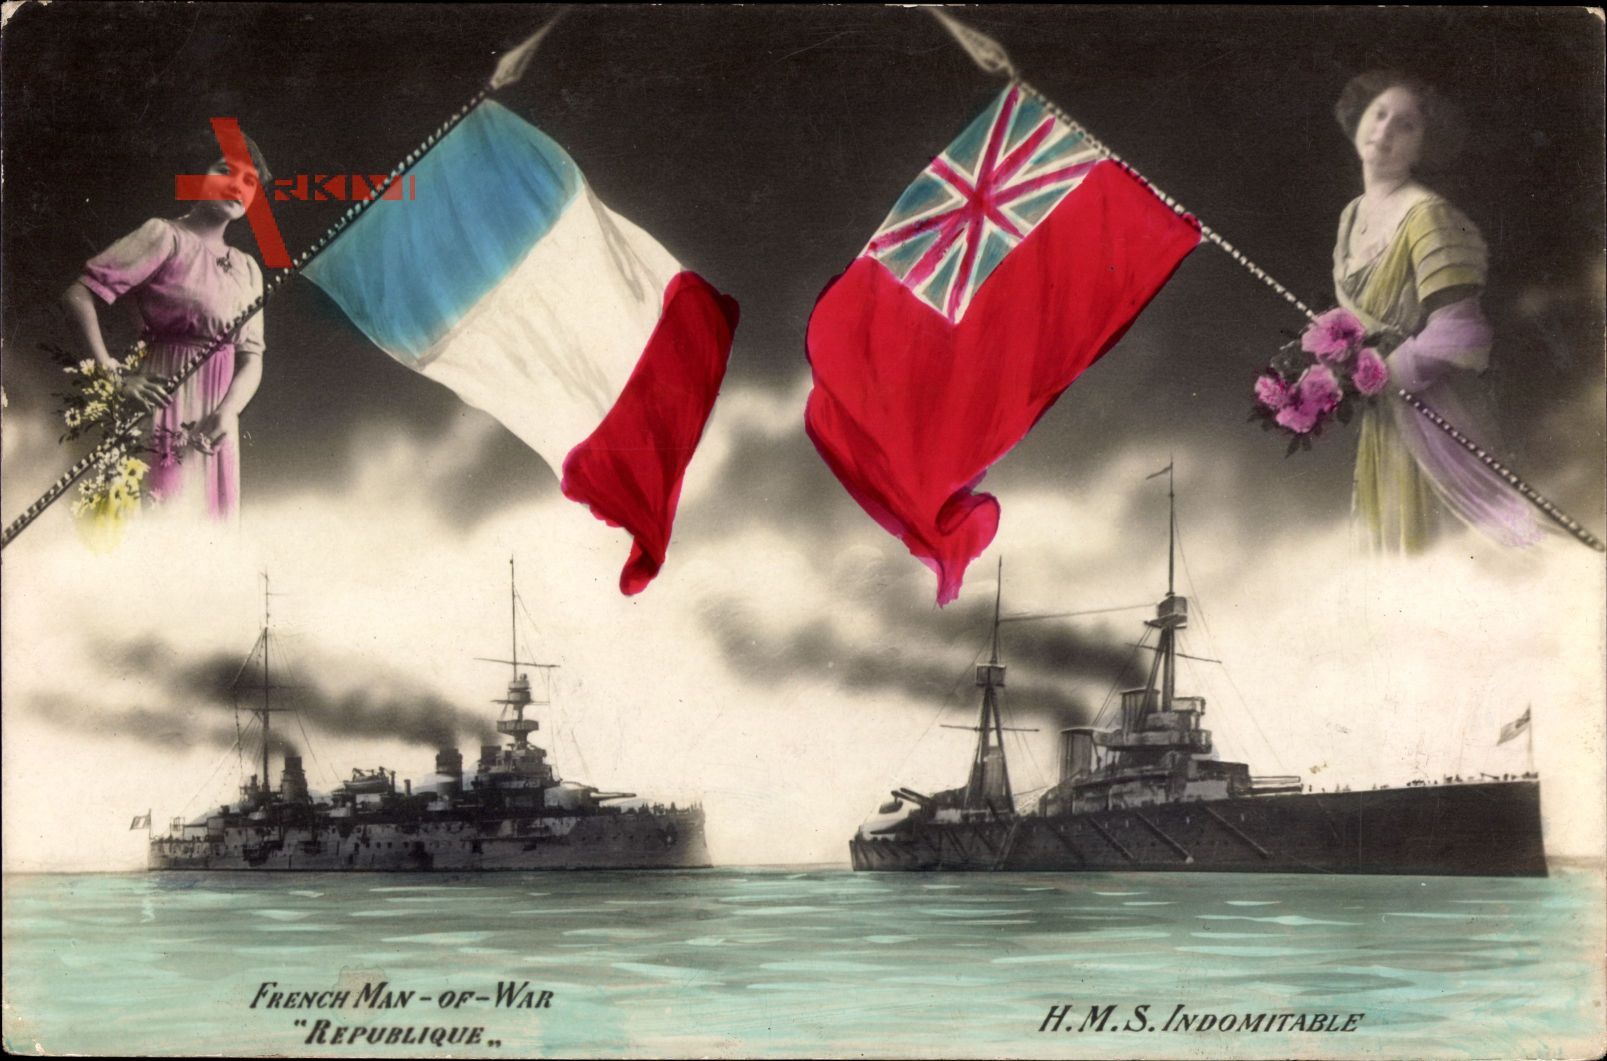 Französisches Kriegsschiff, Britisches Kriegsschiff, République, Indomitable